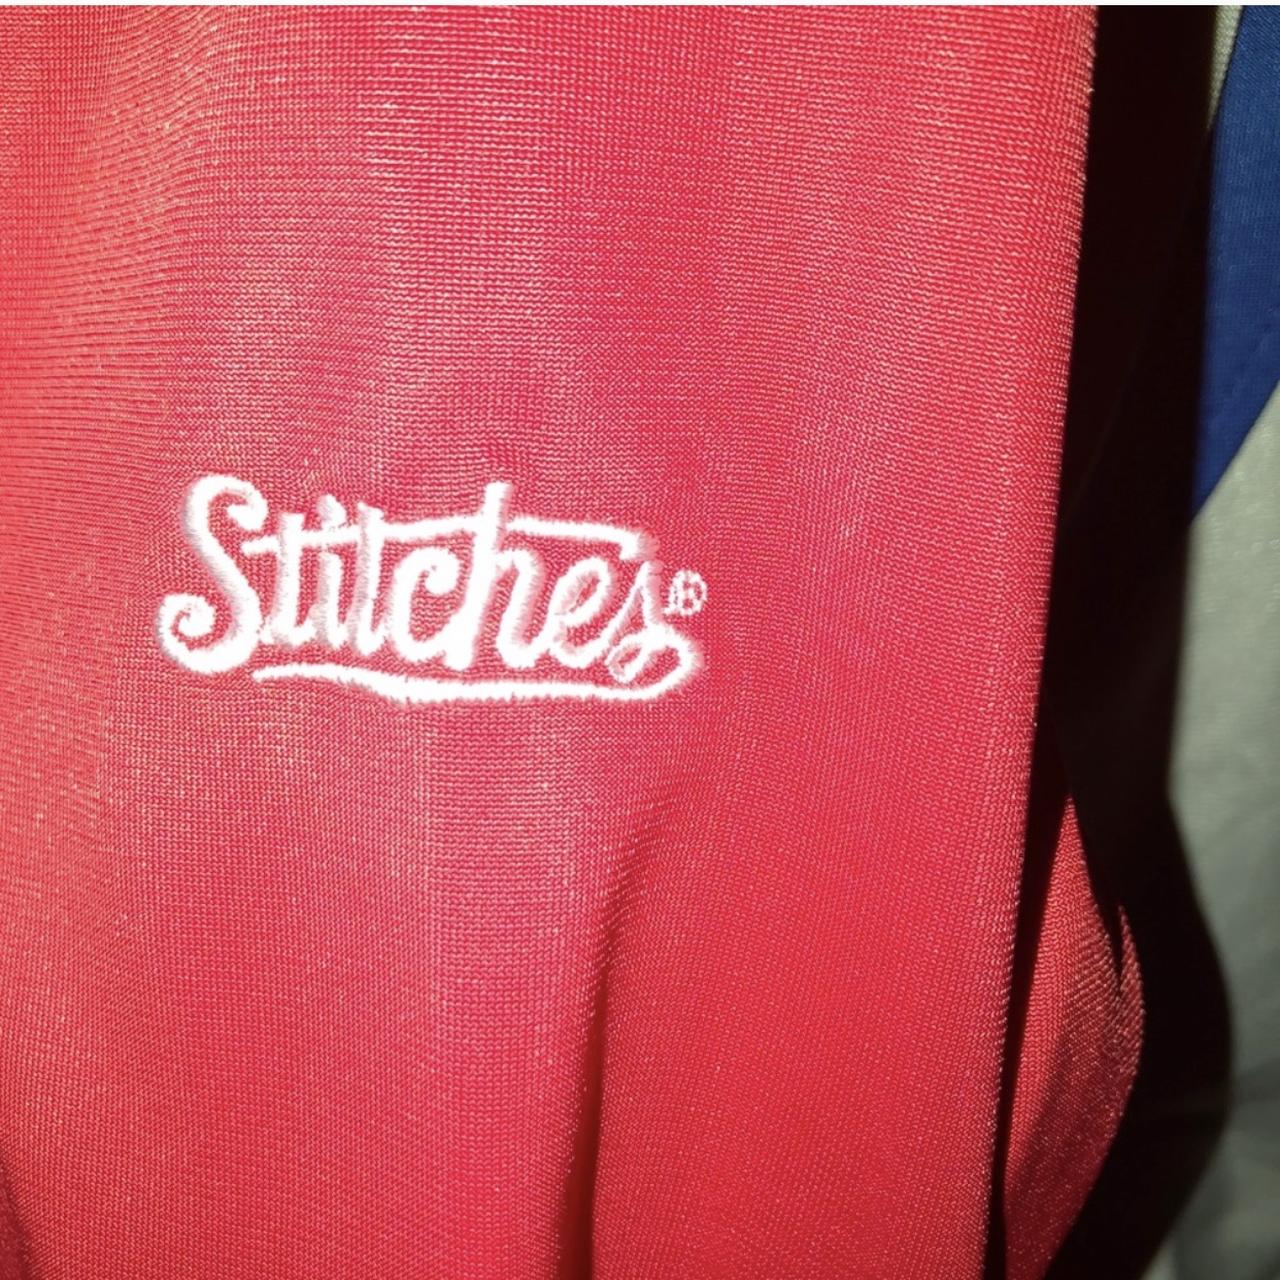 Phillies stitches jacket, athletic gear, genuine - Depop